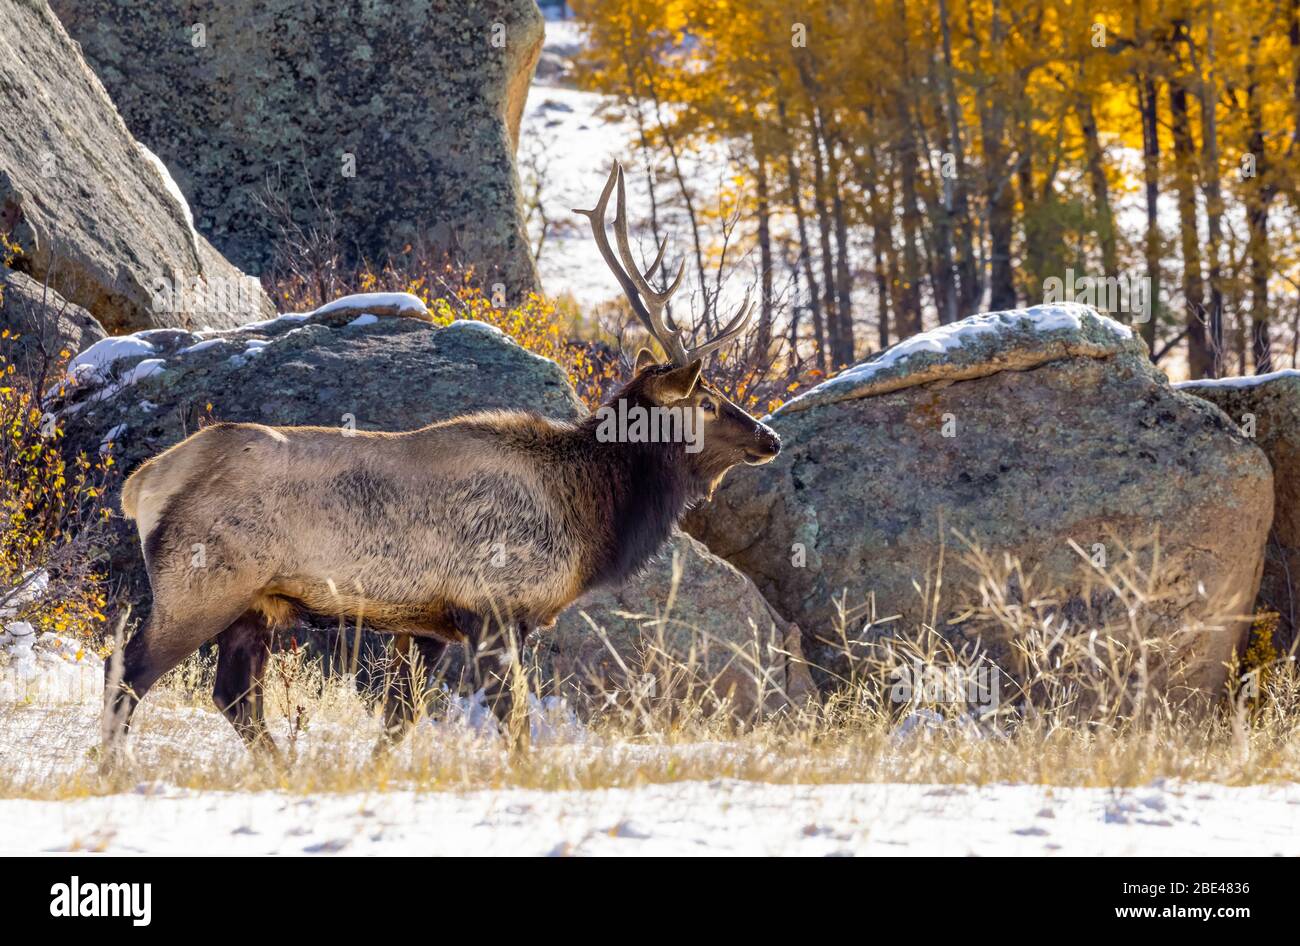 Bull Elk (Cervus canadensis) in autumn; Estes Park, Colorado, United States of America Stock Photo